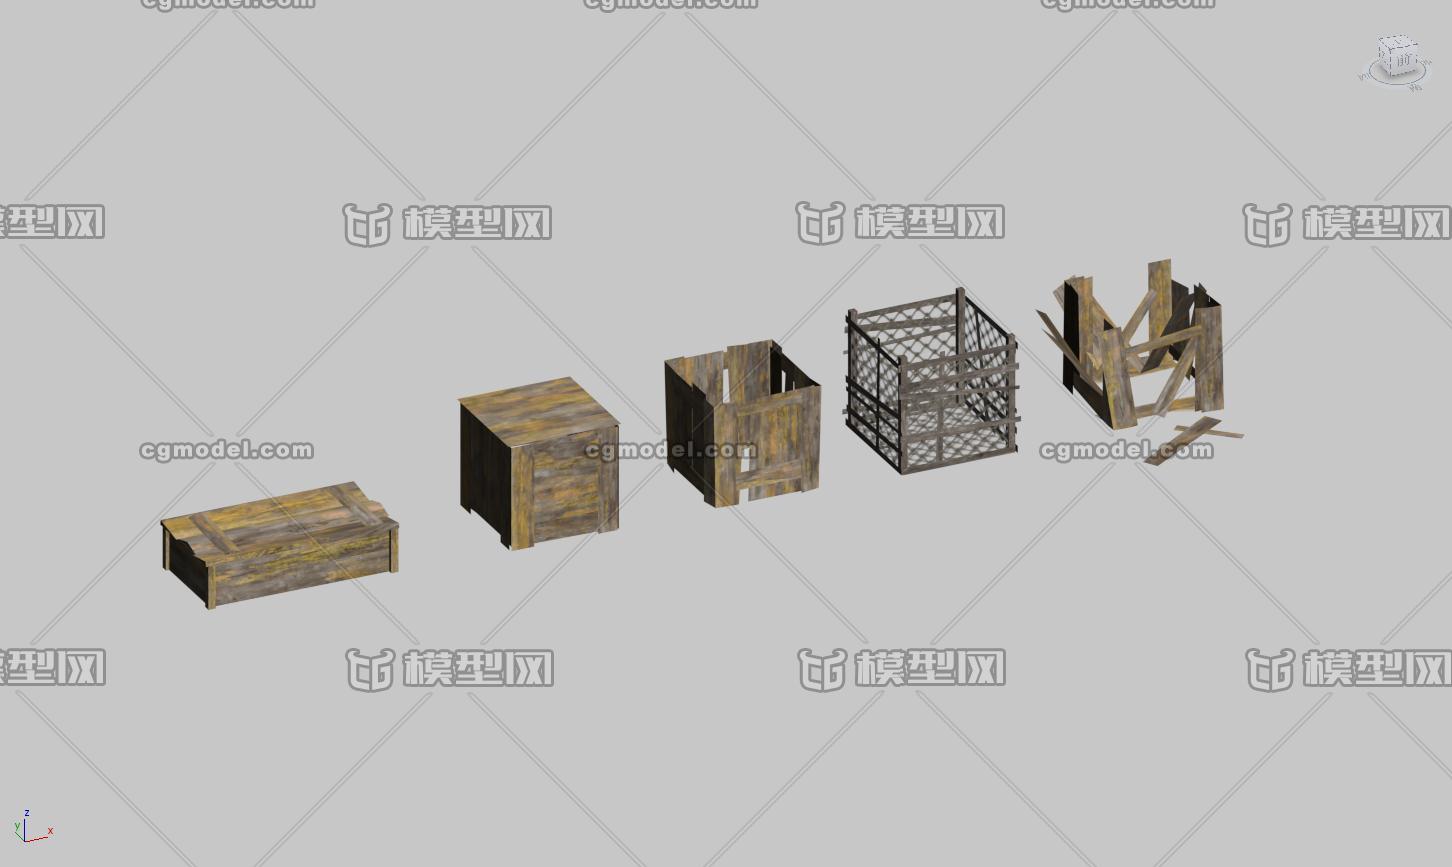 木箱,烂木箱,网箱,木制品,木板箱,货箱,武器箱